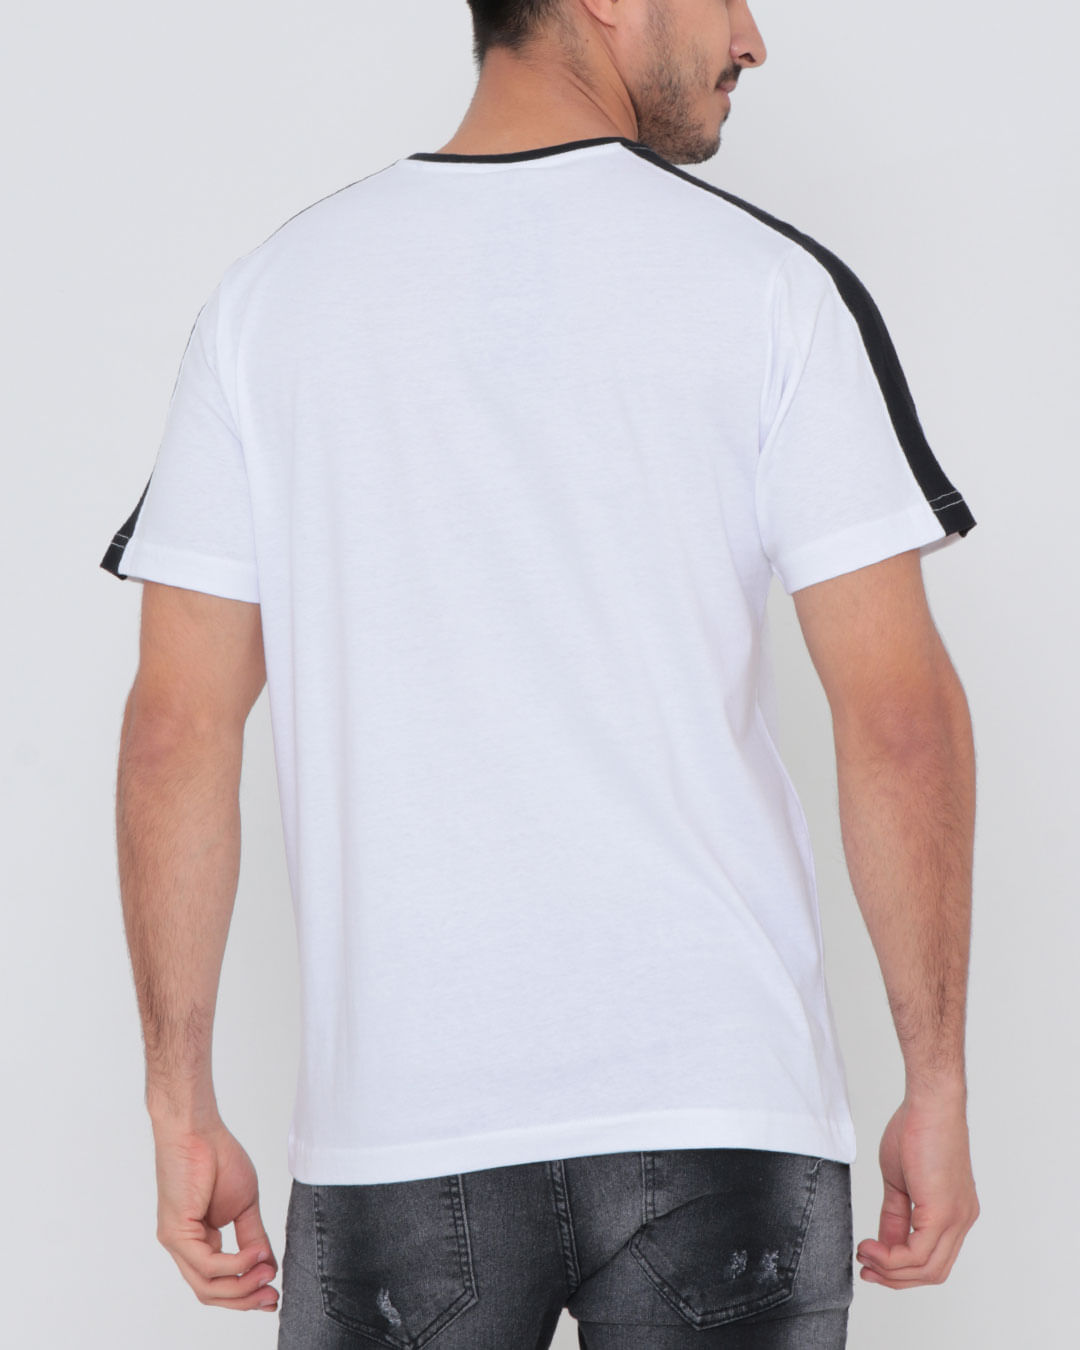 Camiseta-Com-Recorte-Estampa-Respect-Branca